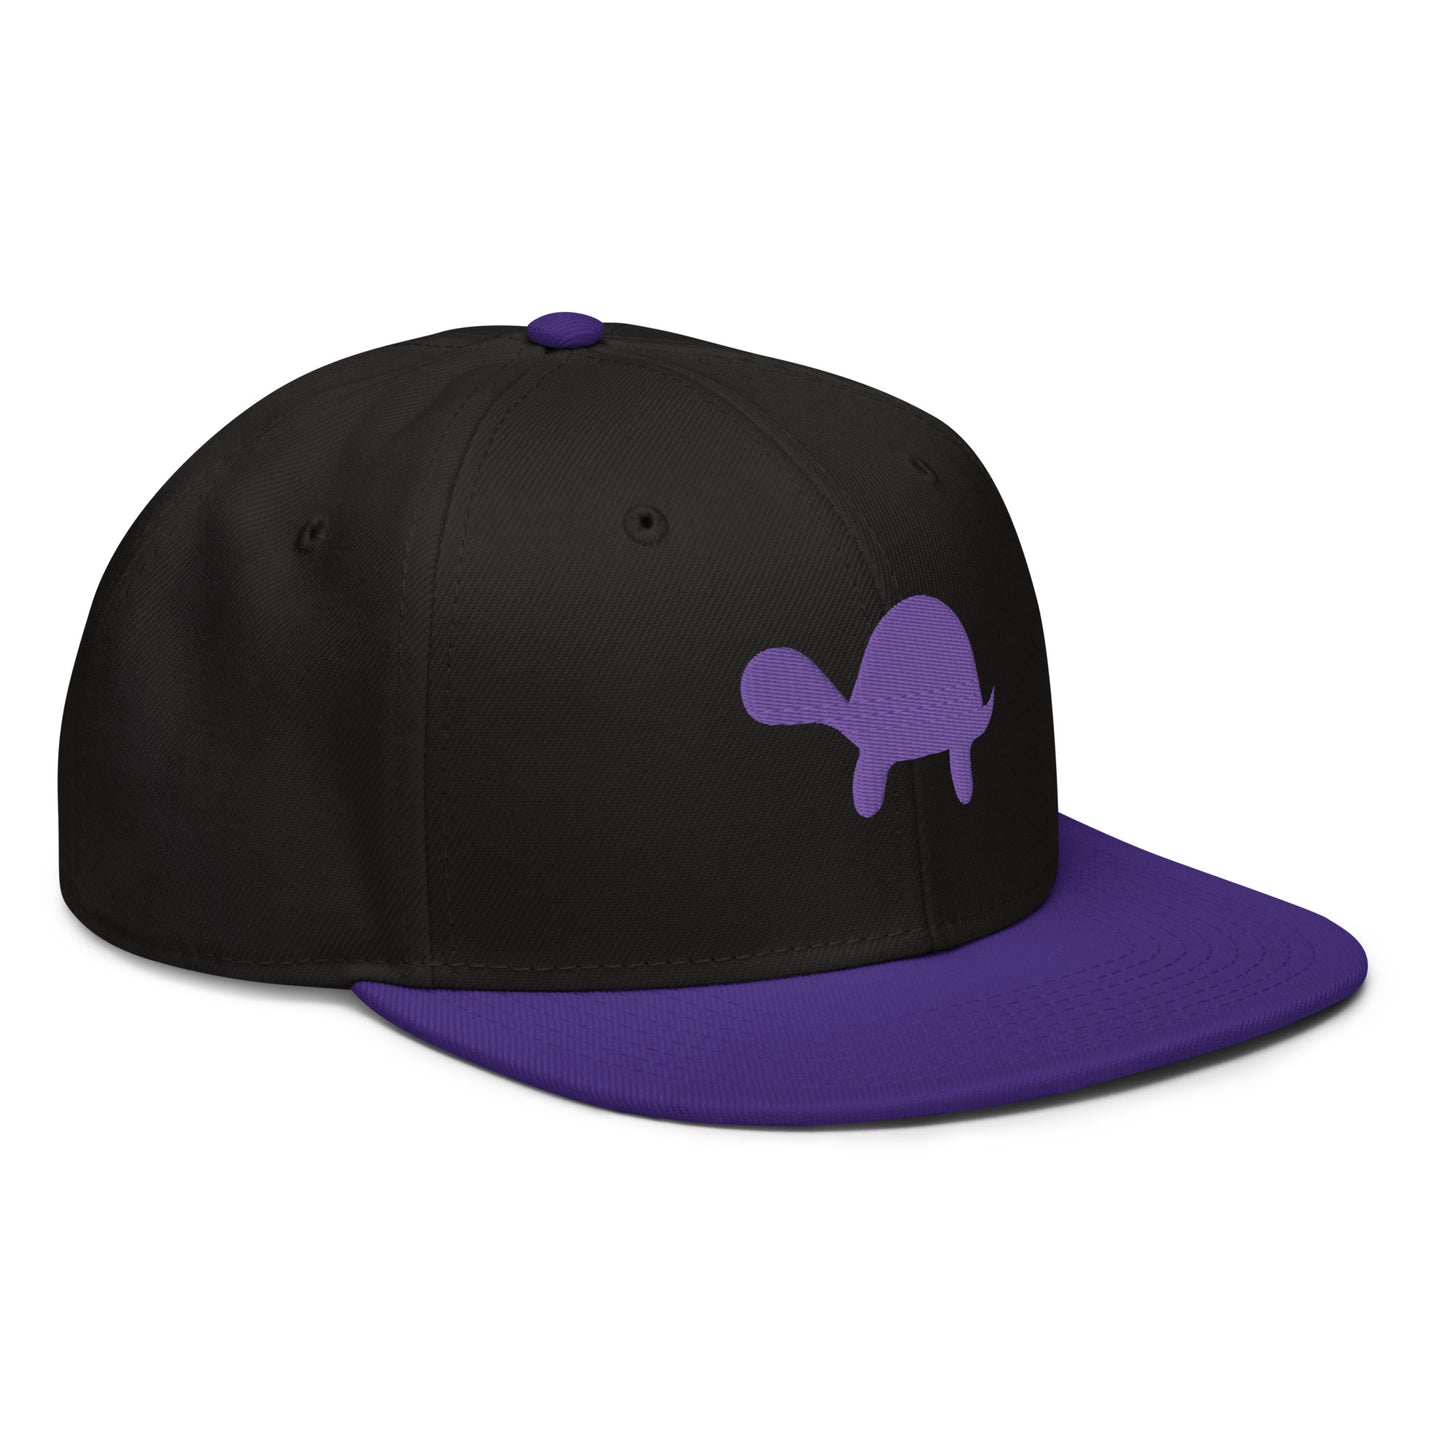 Turtle Snapback Hat (Black/Purple)